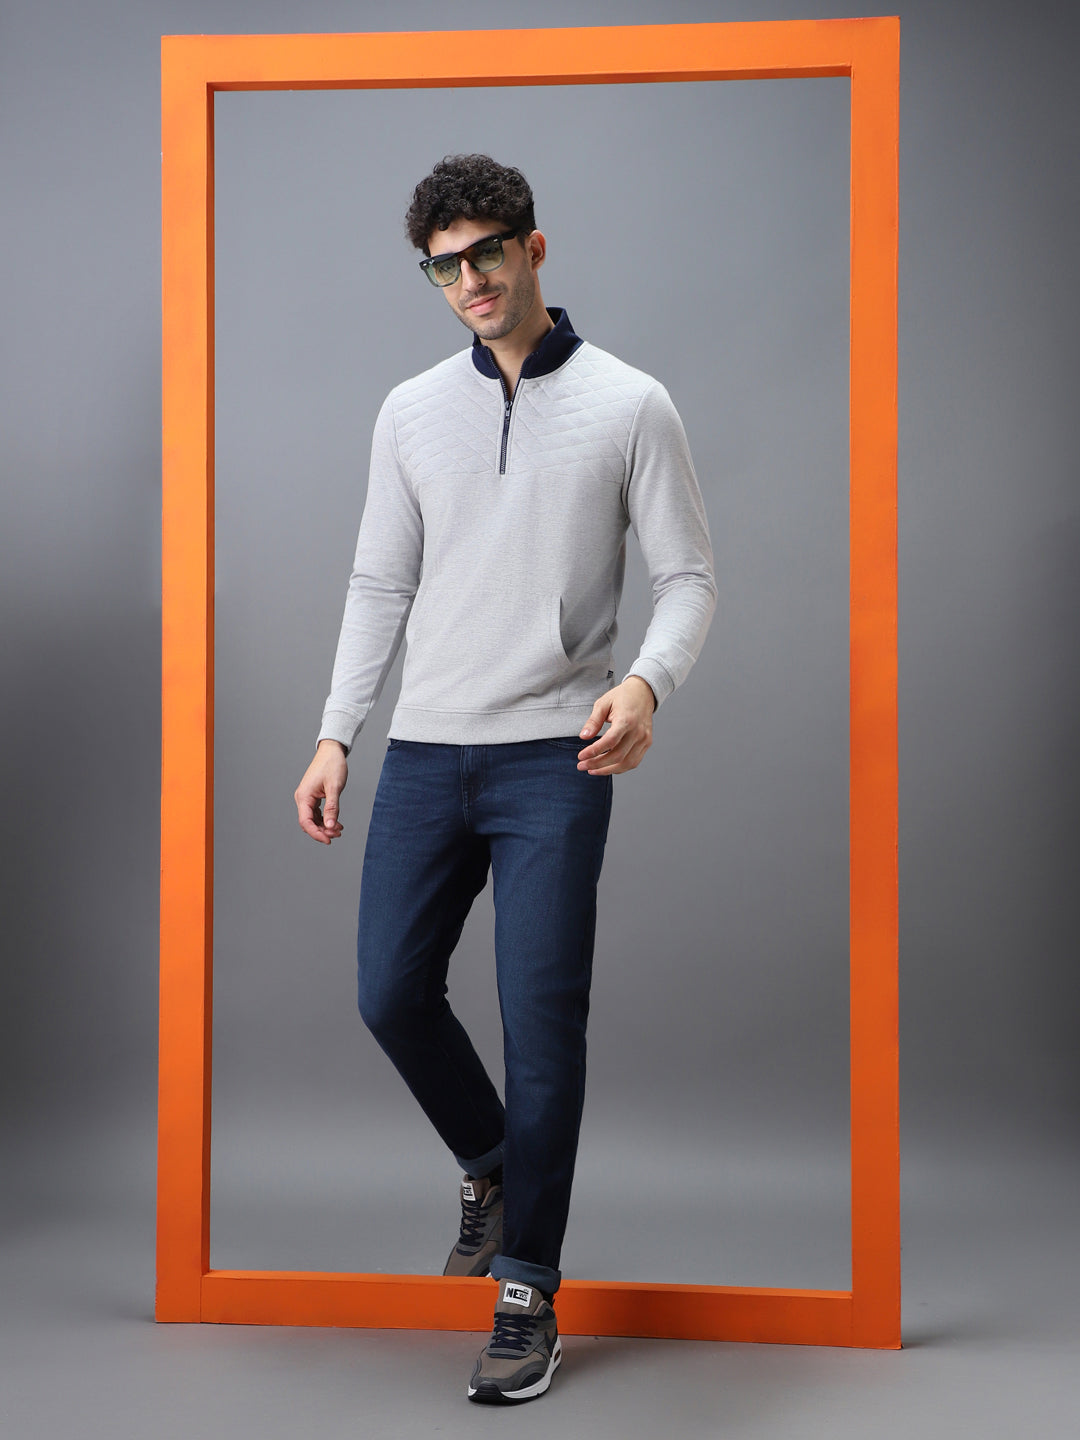 Men's Grey Cotton Solid Zippered High Neck Sweatshirt